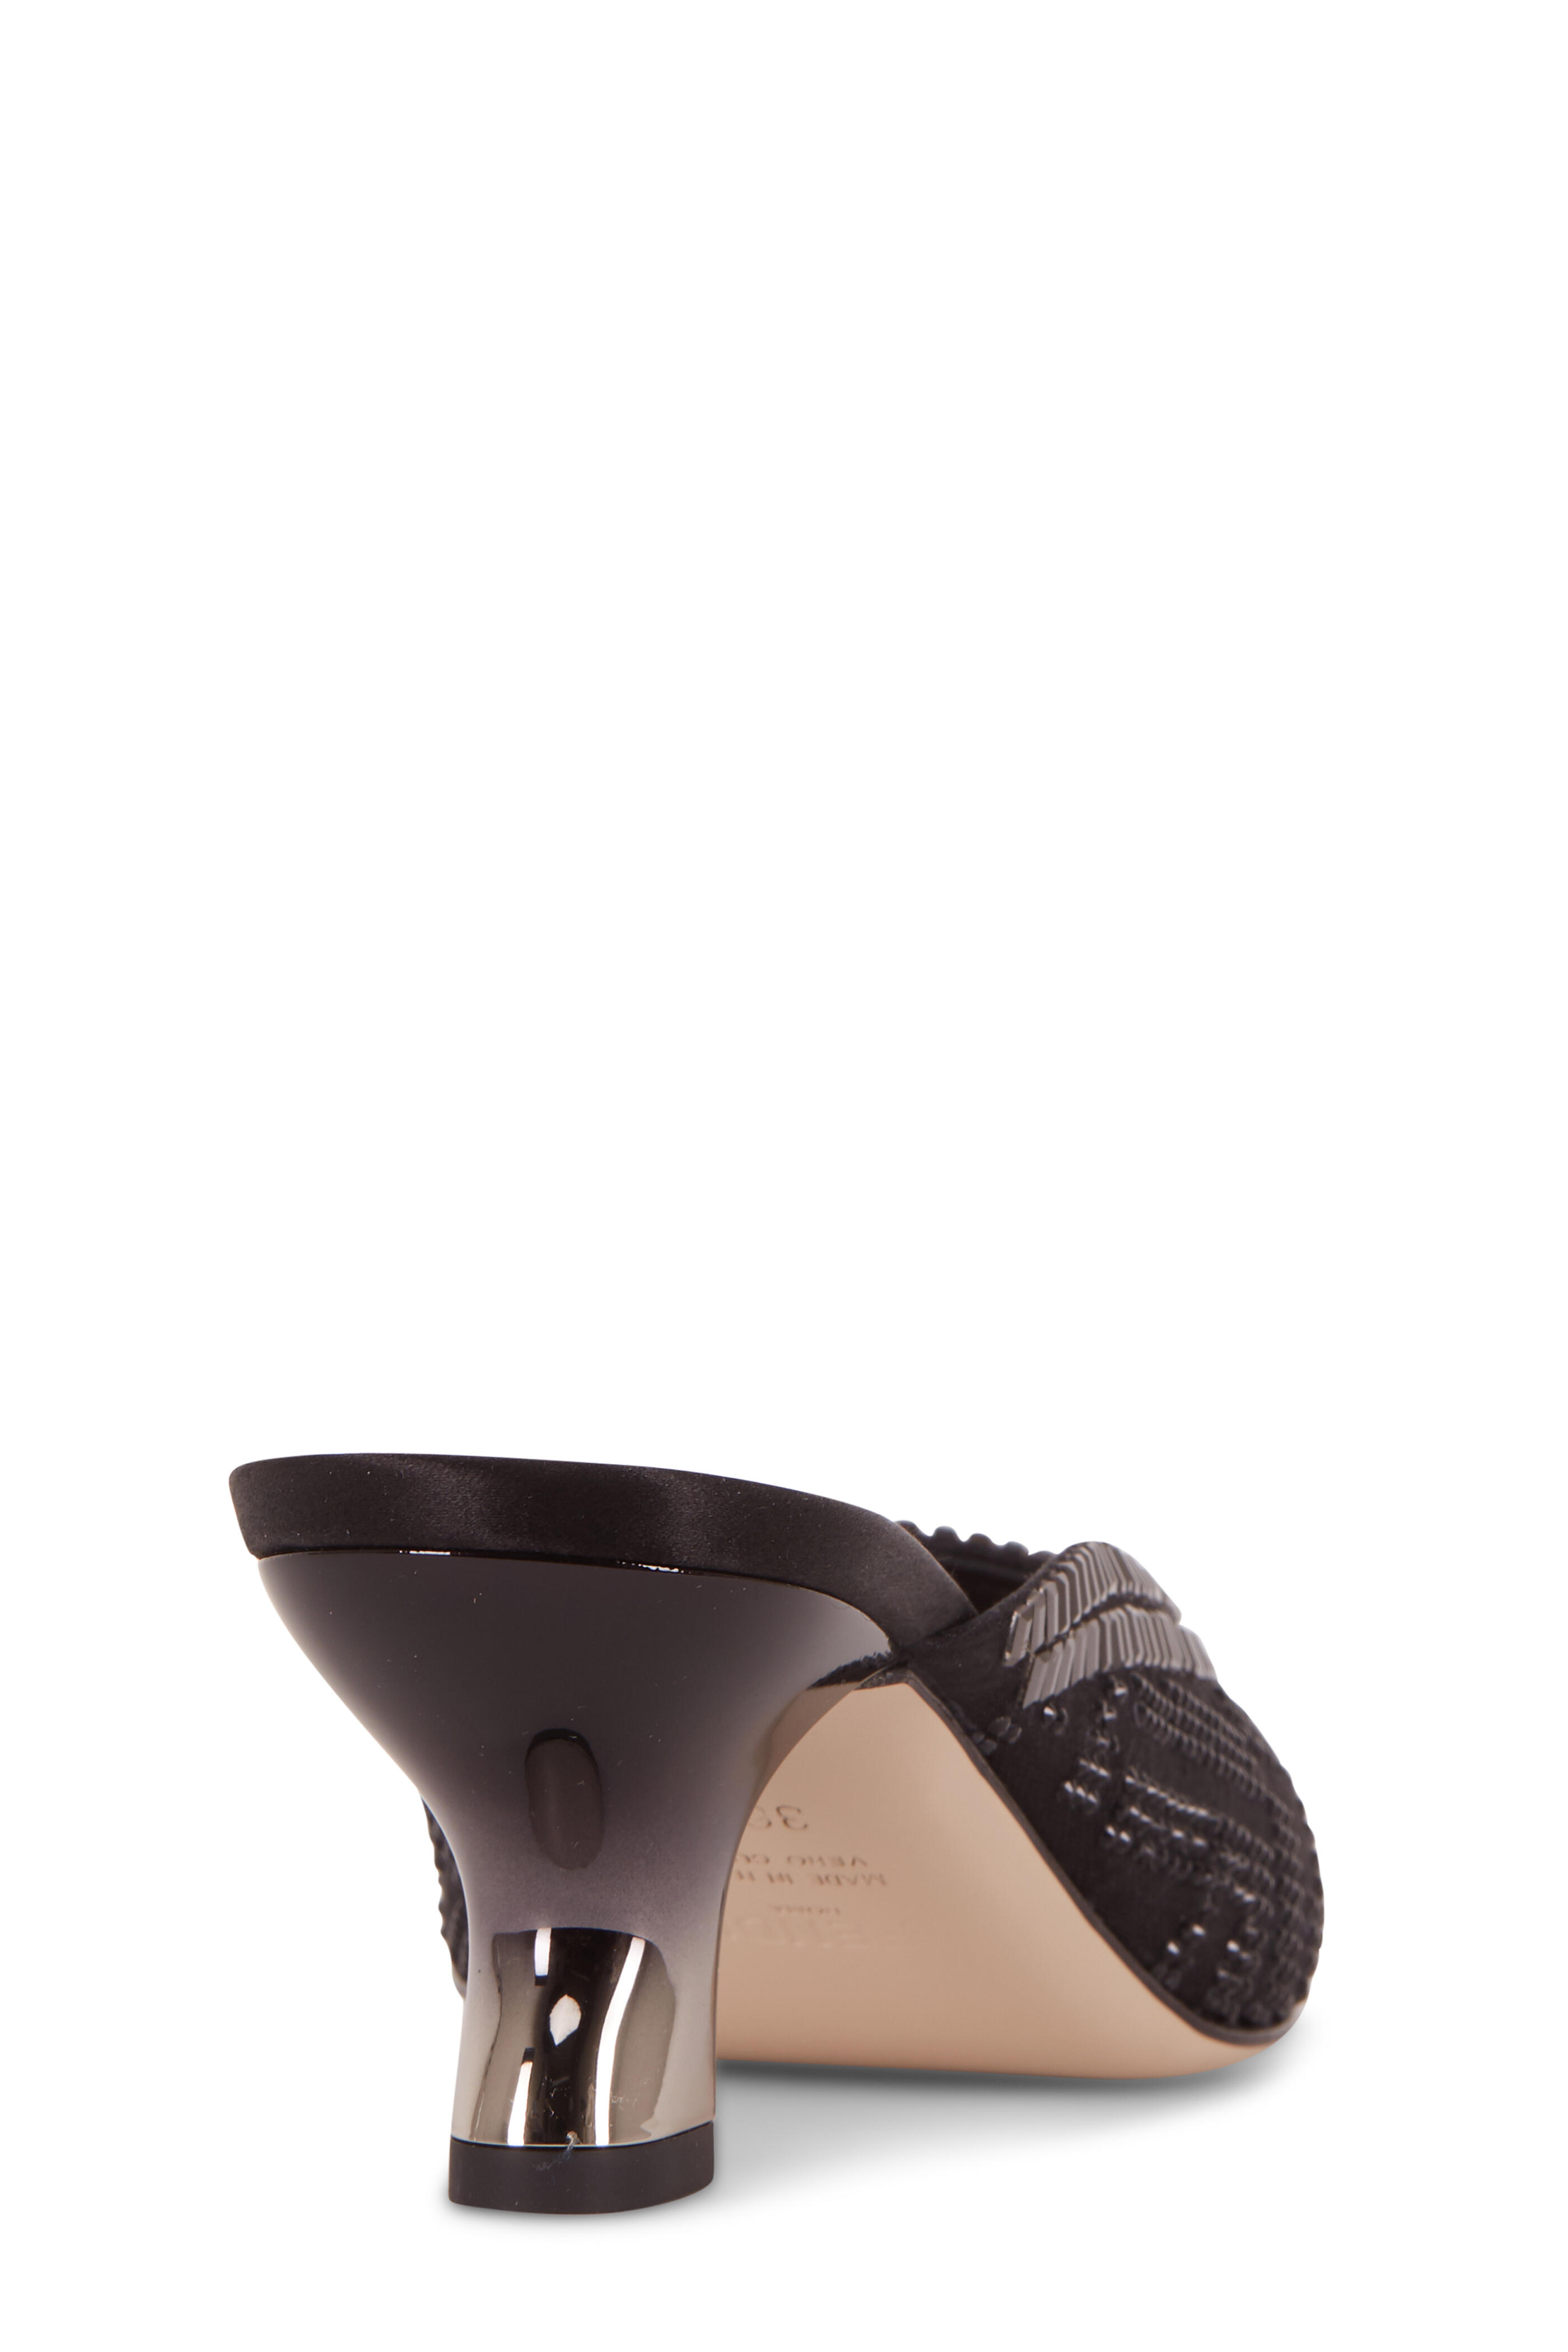 Fendi - Colibrì Sabot Black Mesh Embellished Mule, 55mm